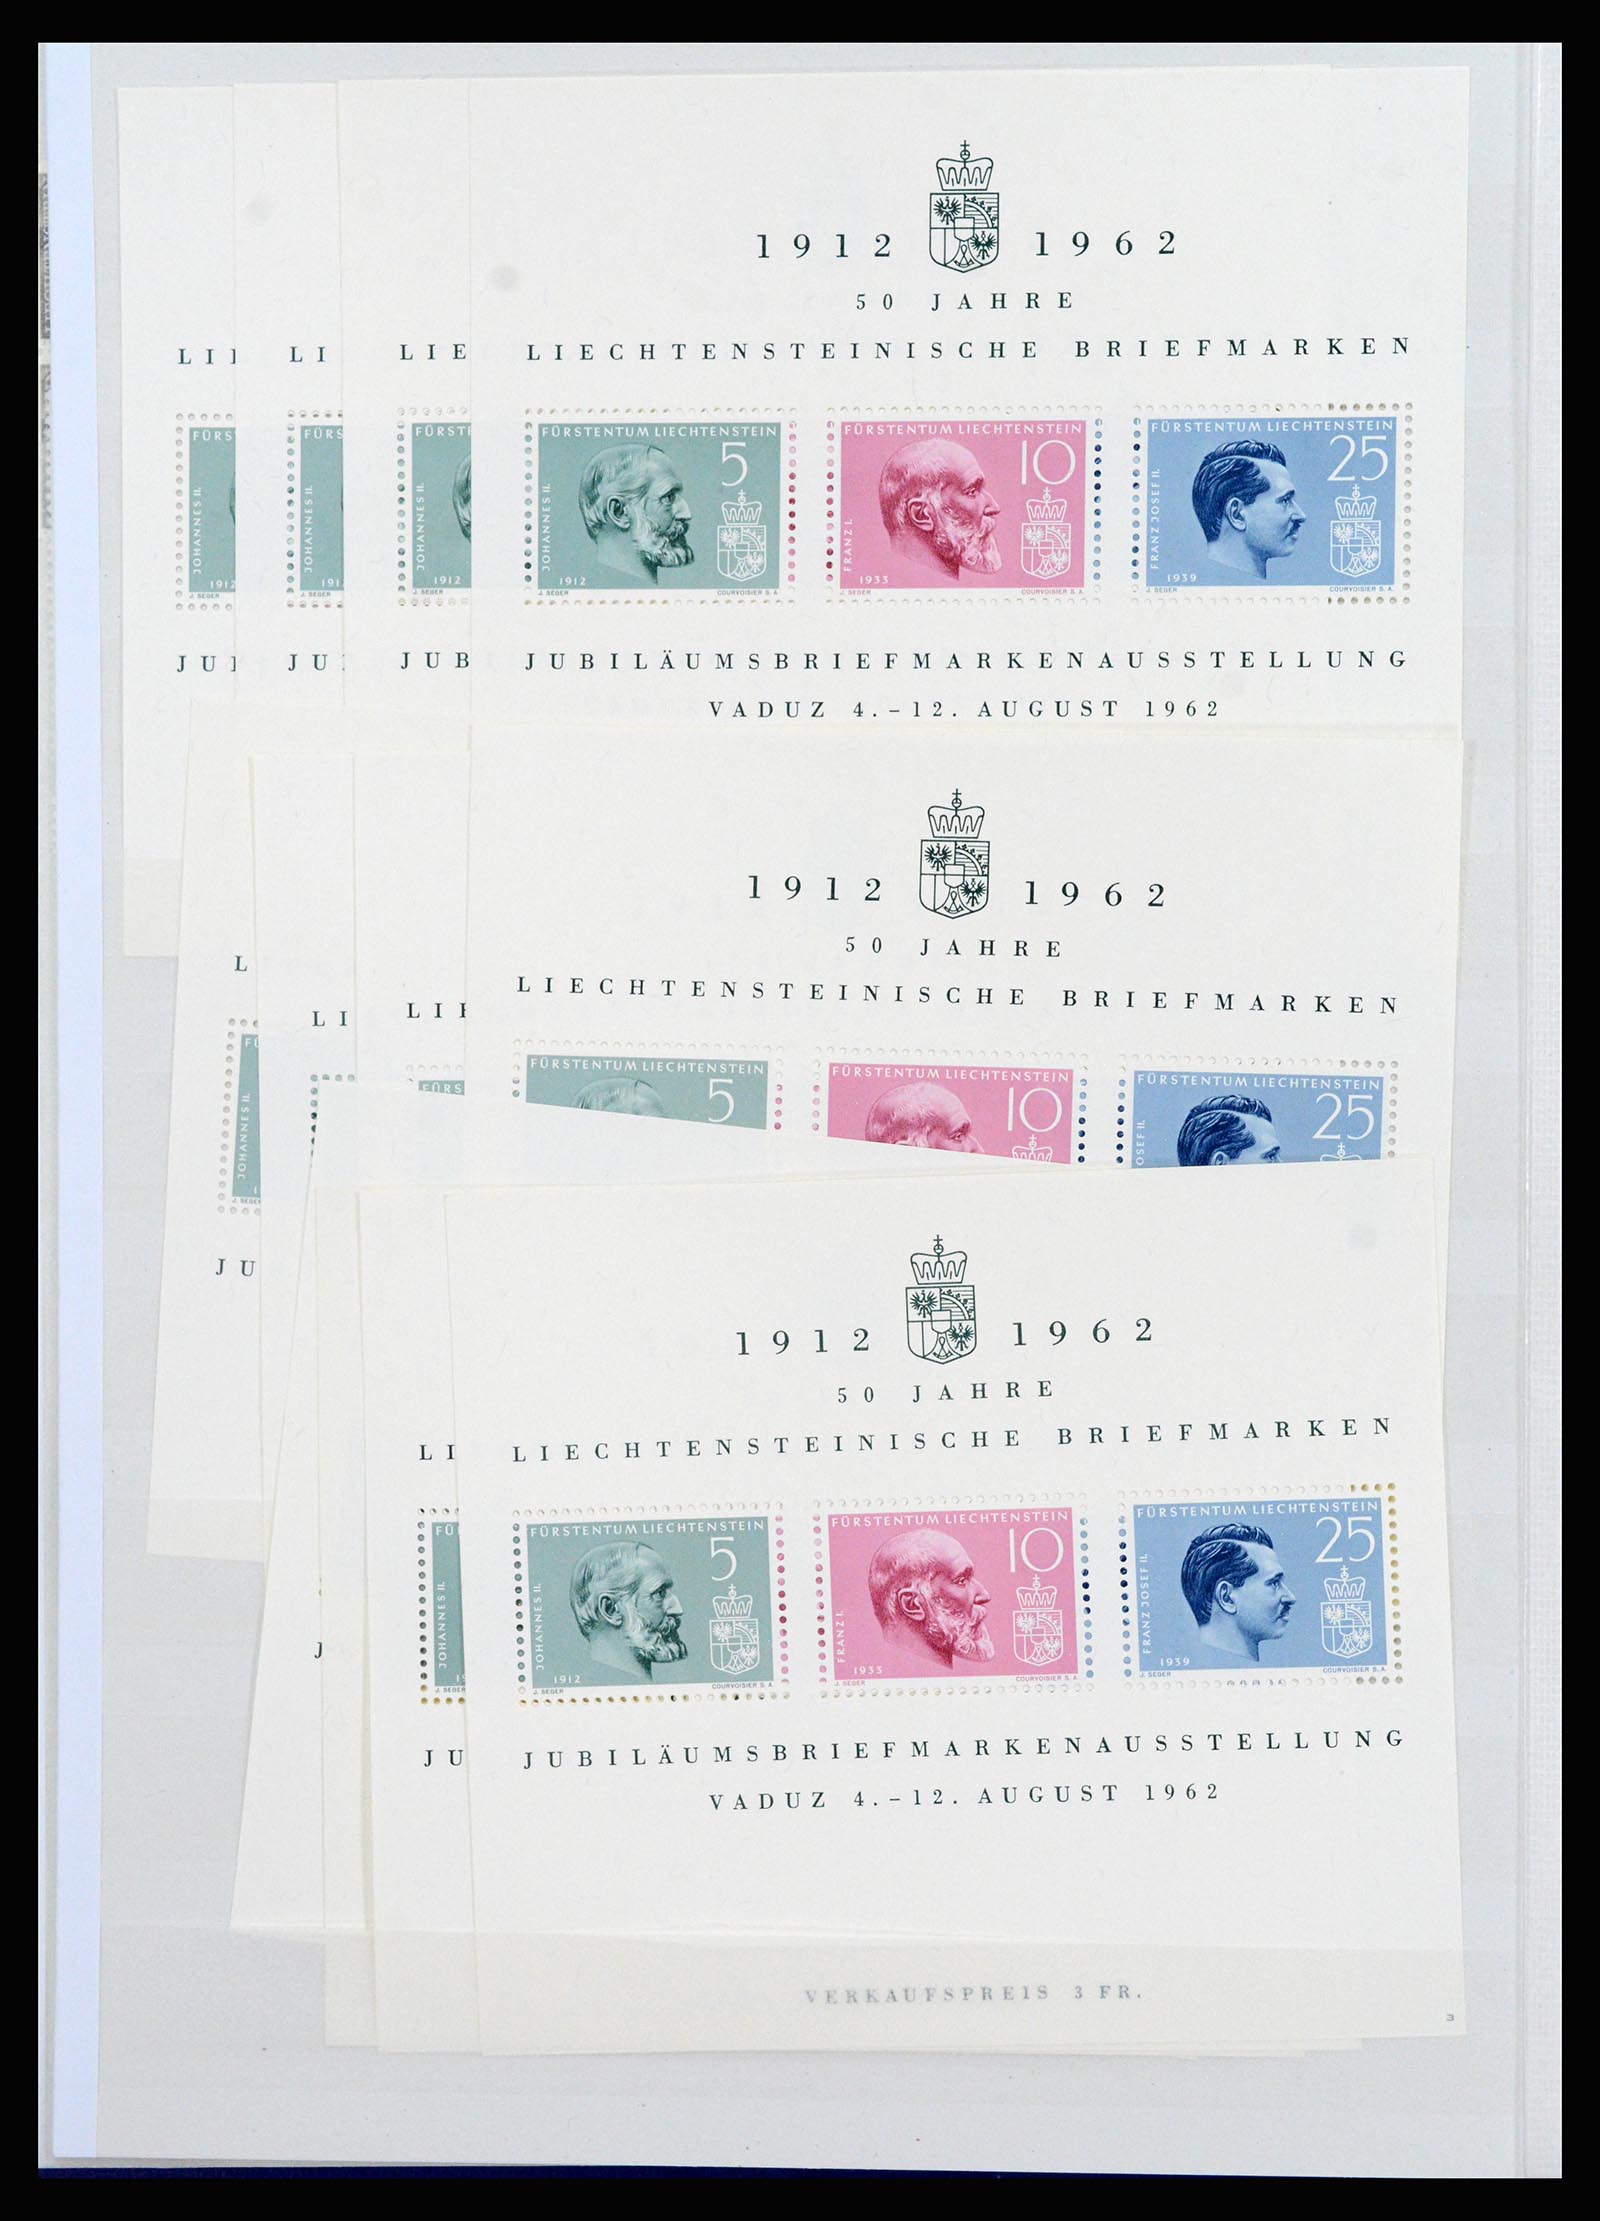 37261 006 - Stamp collection 37261 Liechtenstein 1961-1995.